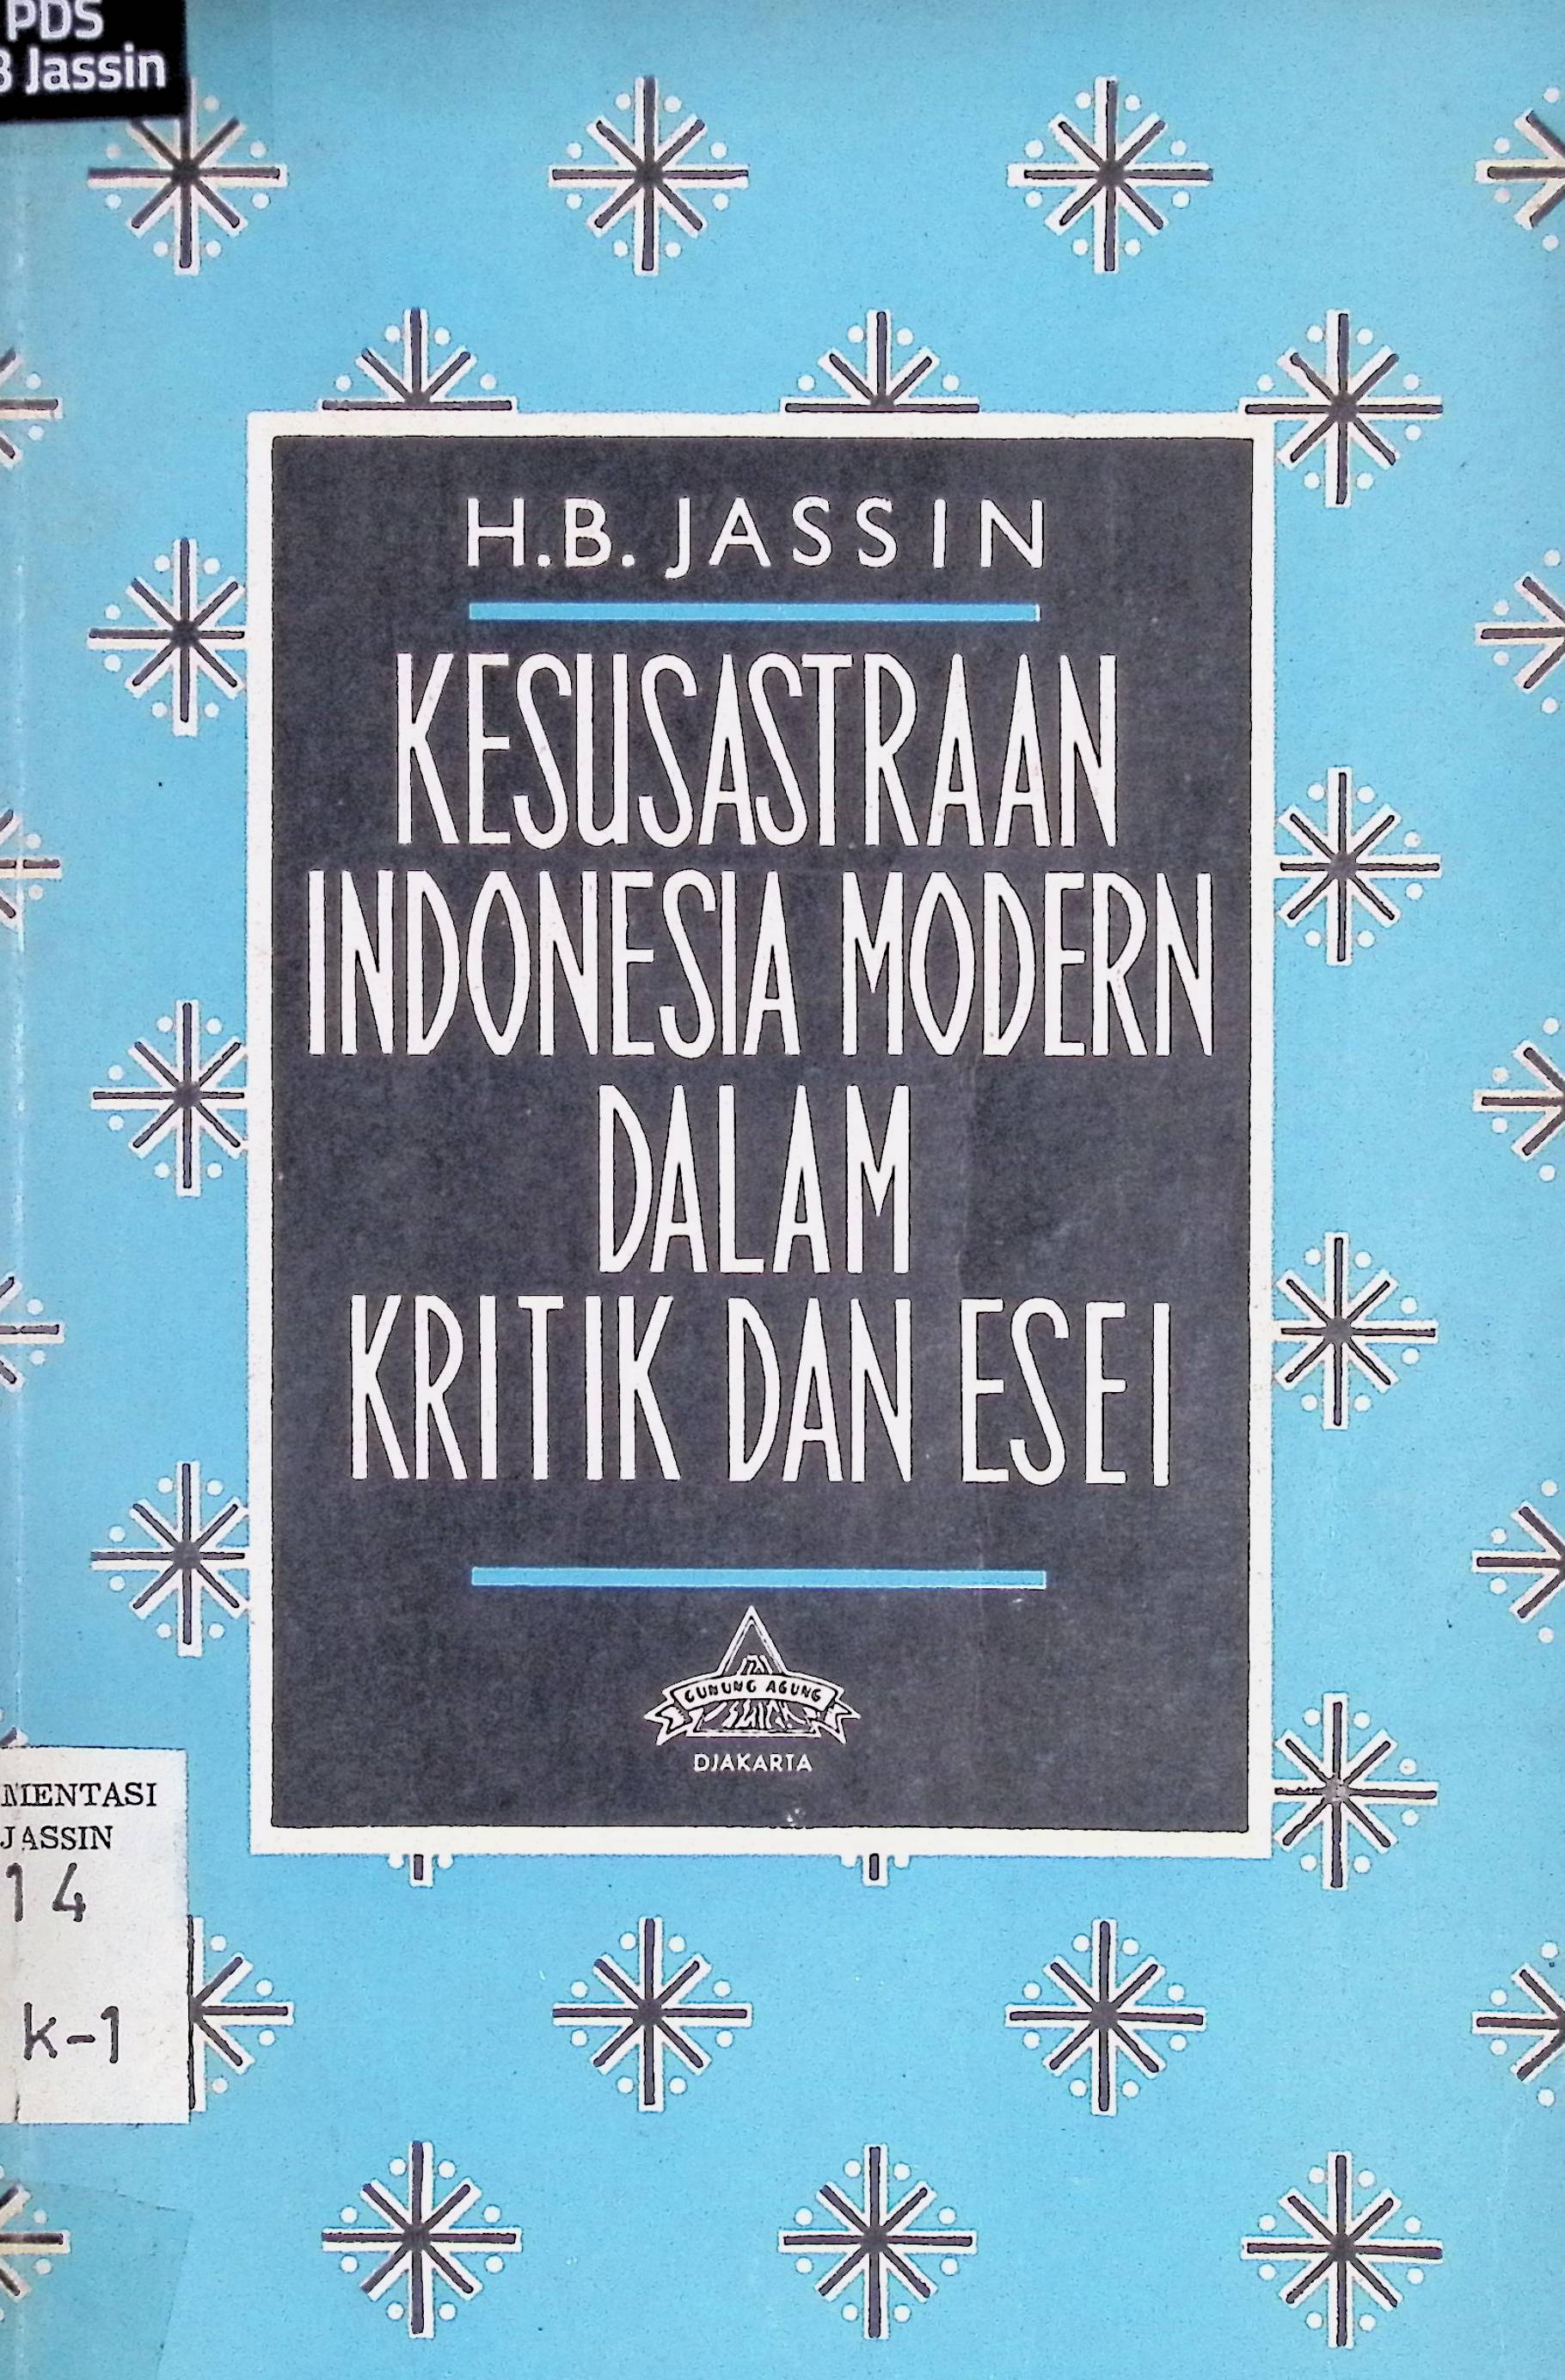 Kesusastraan Indonesia Modern dalam Kritik dan Esei I